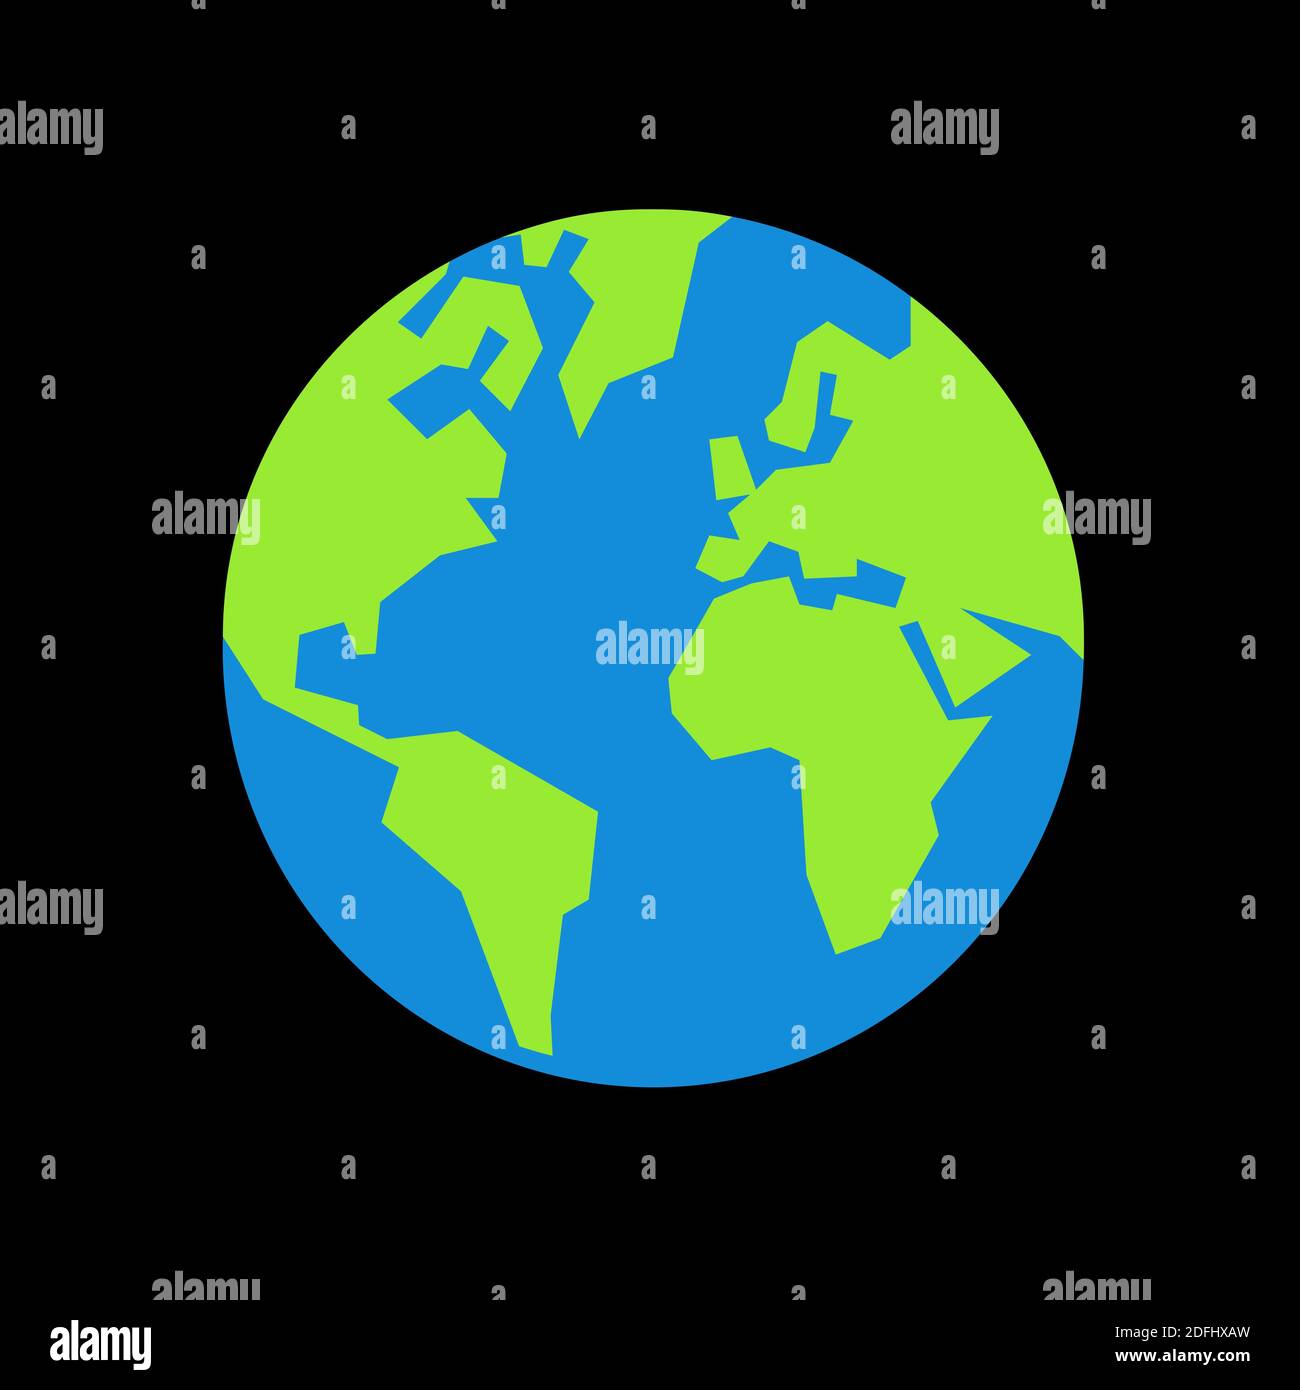 Pianeta Terra - globo con continenti verdi e oceano blu. L'universo nero, il cosmo e lo spazio sono intorno ad esso. Semplice illustrazione vettoriale con shap angolare Foto Stock